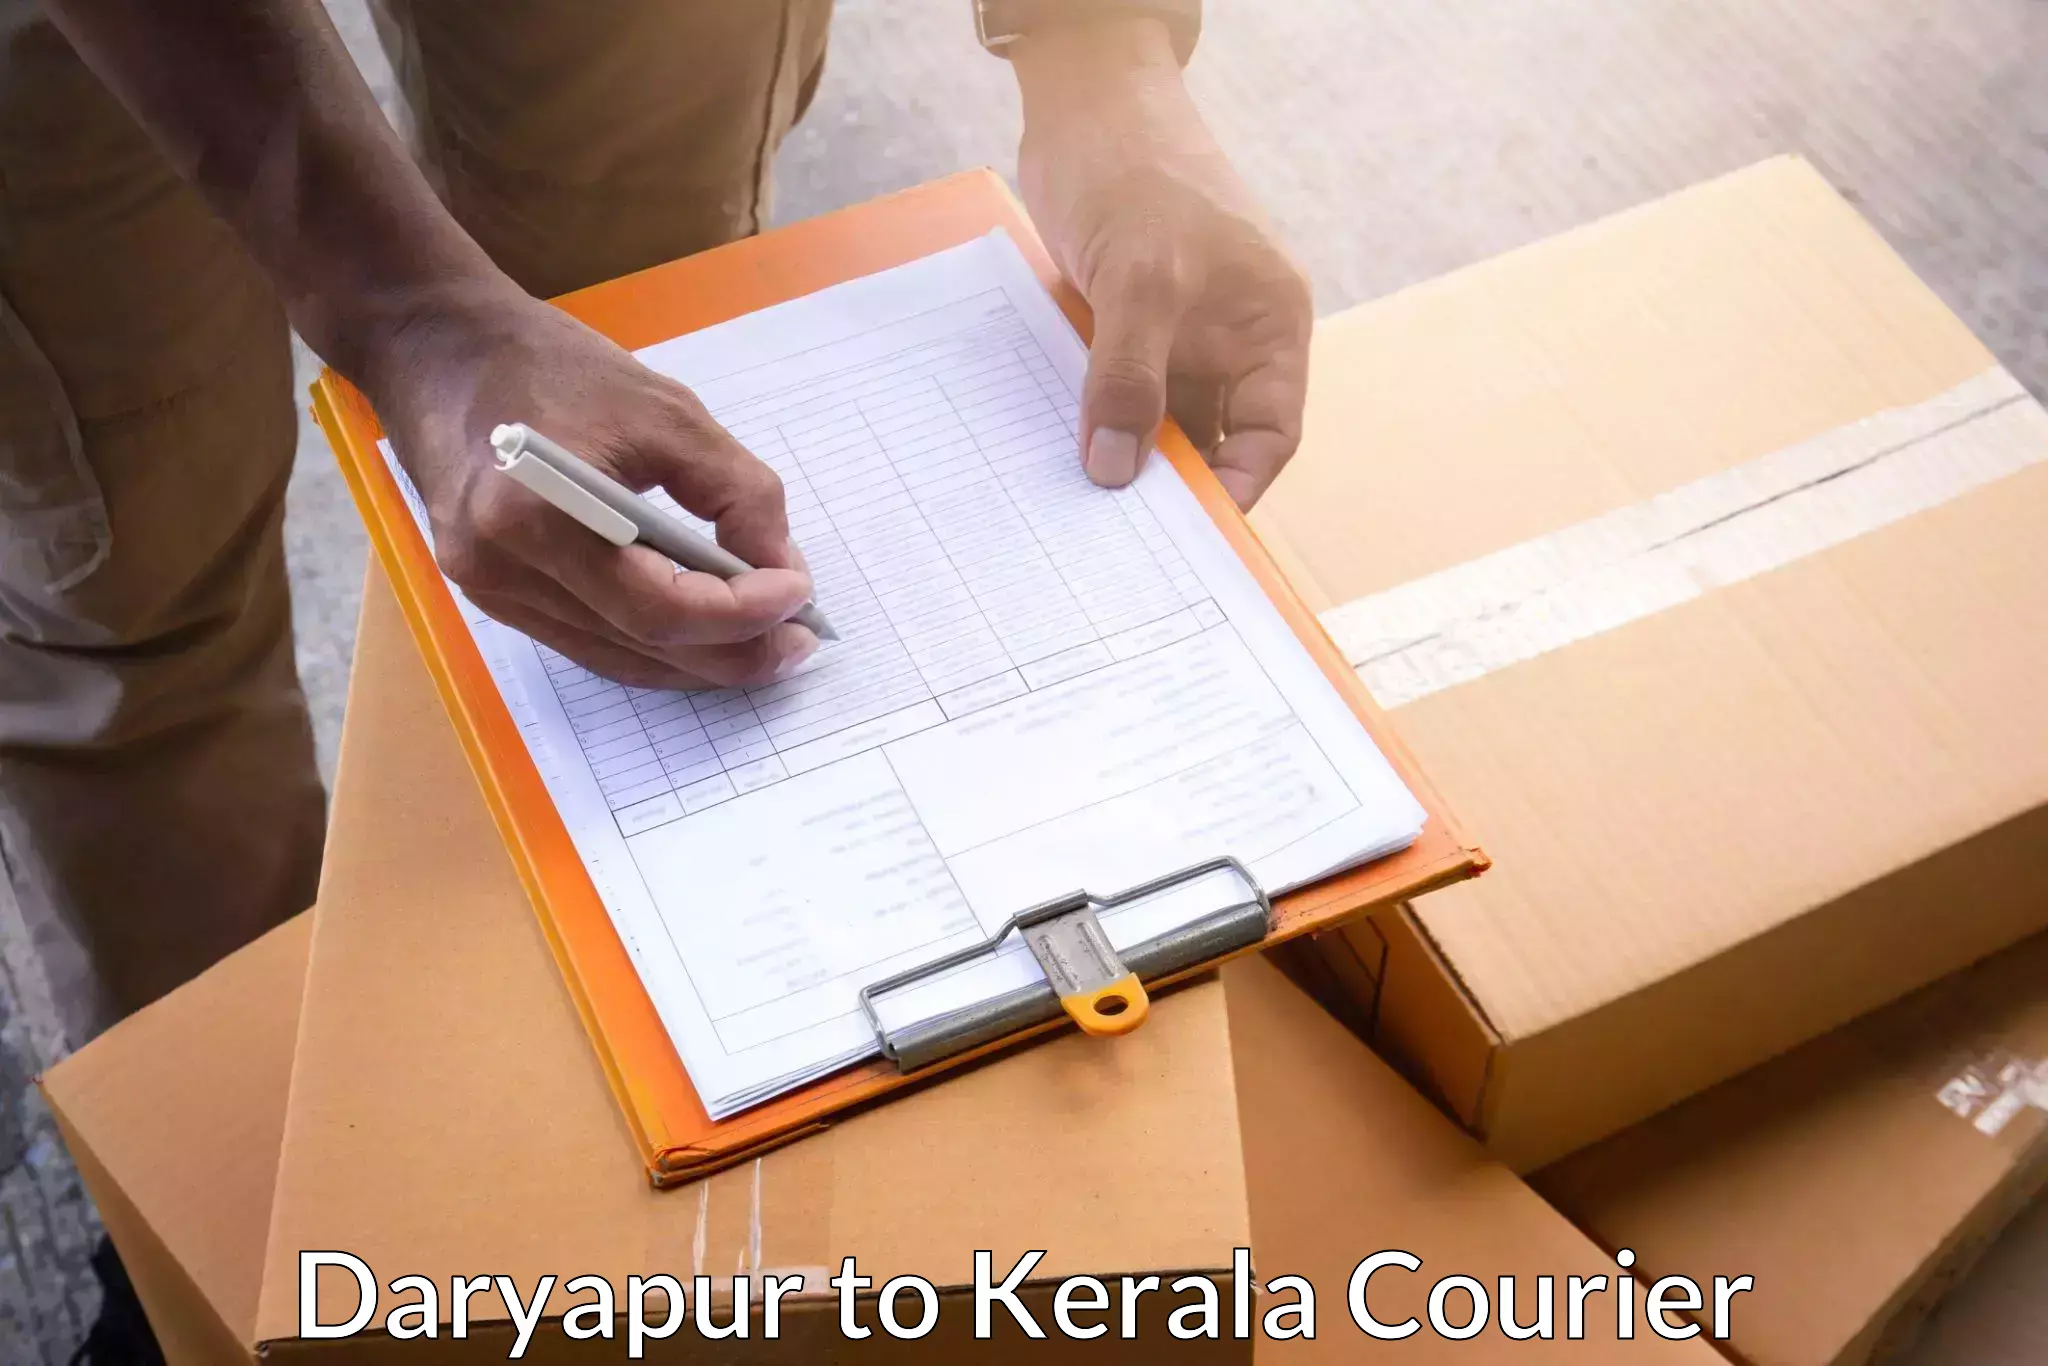 Premium courier solutions Daryapur to Kuchi